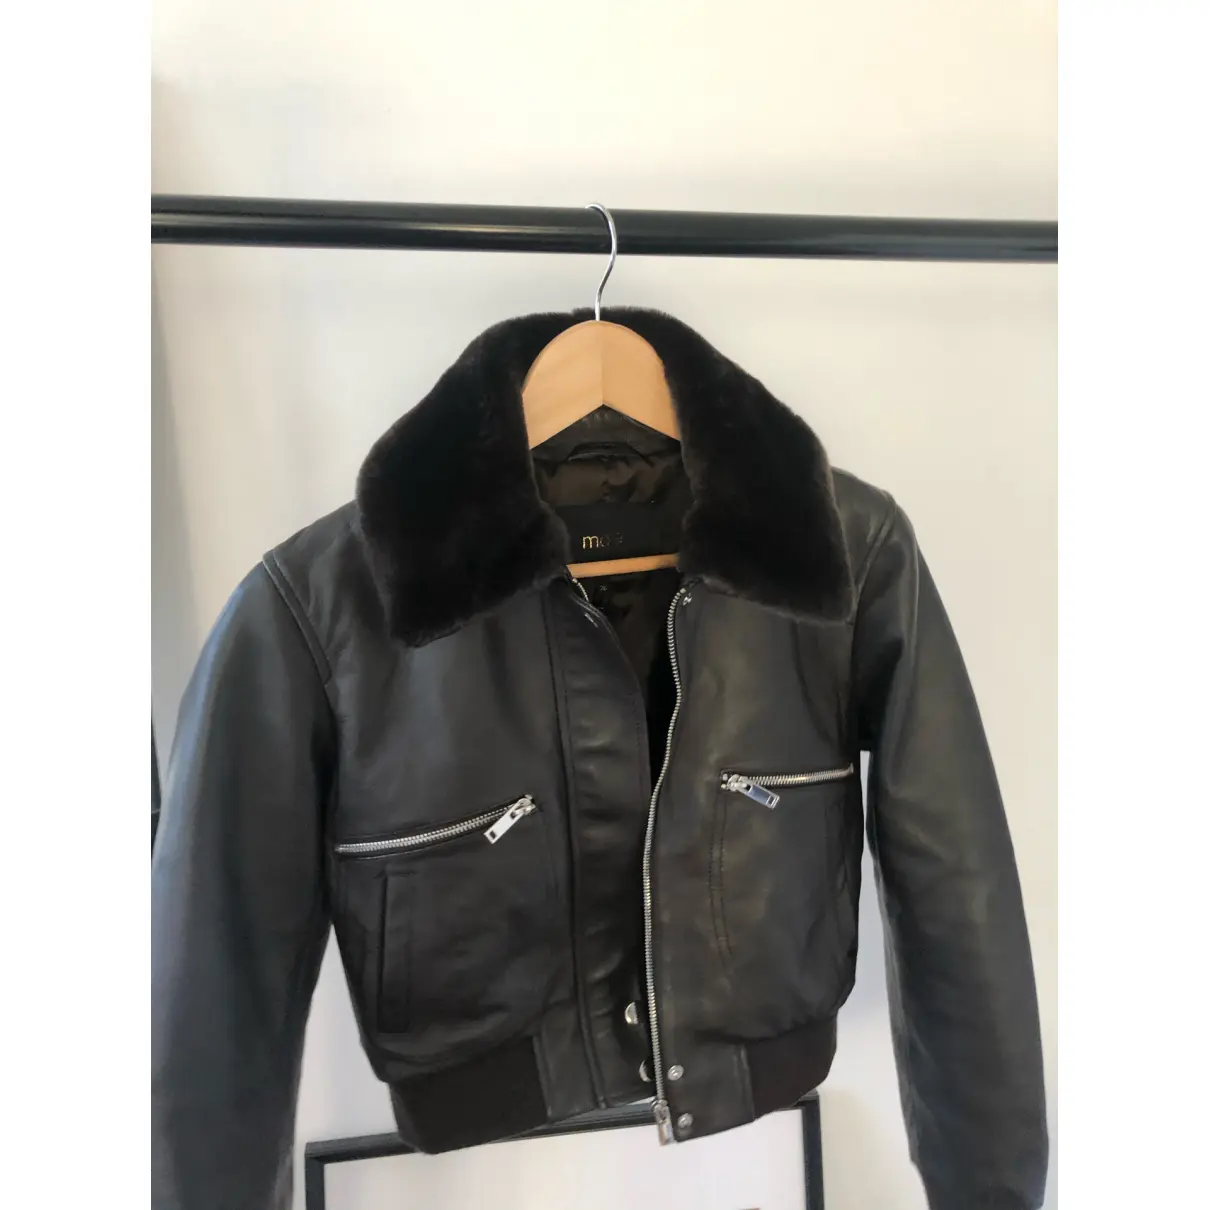 Fall Winter 2020 leather jacket Maje